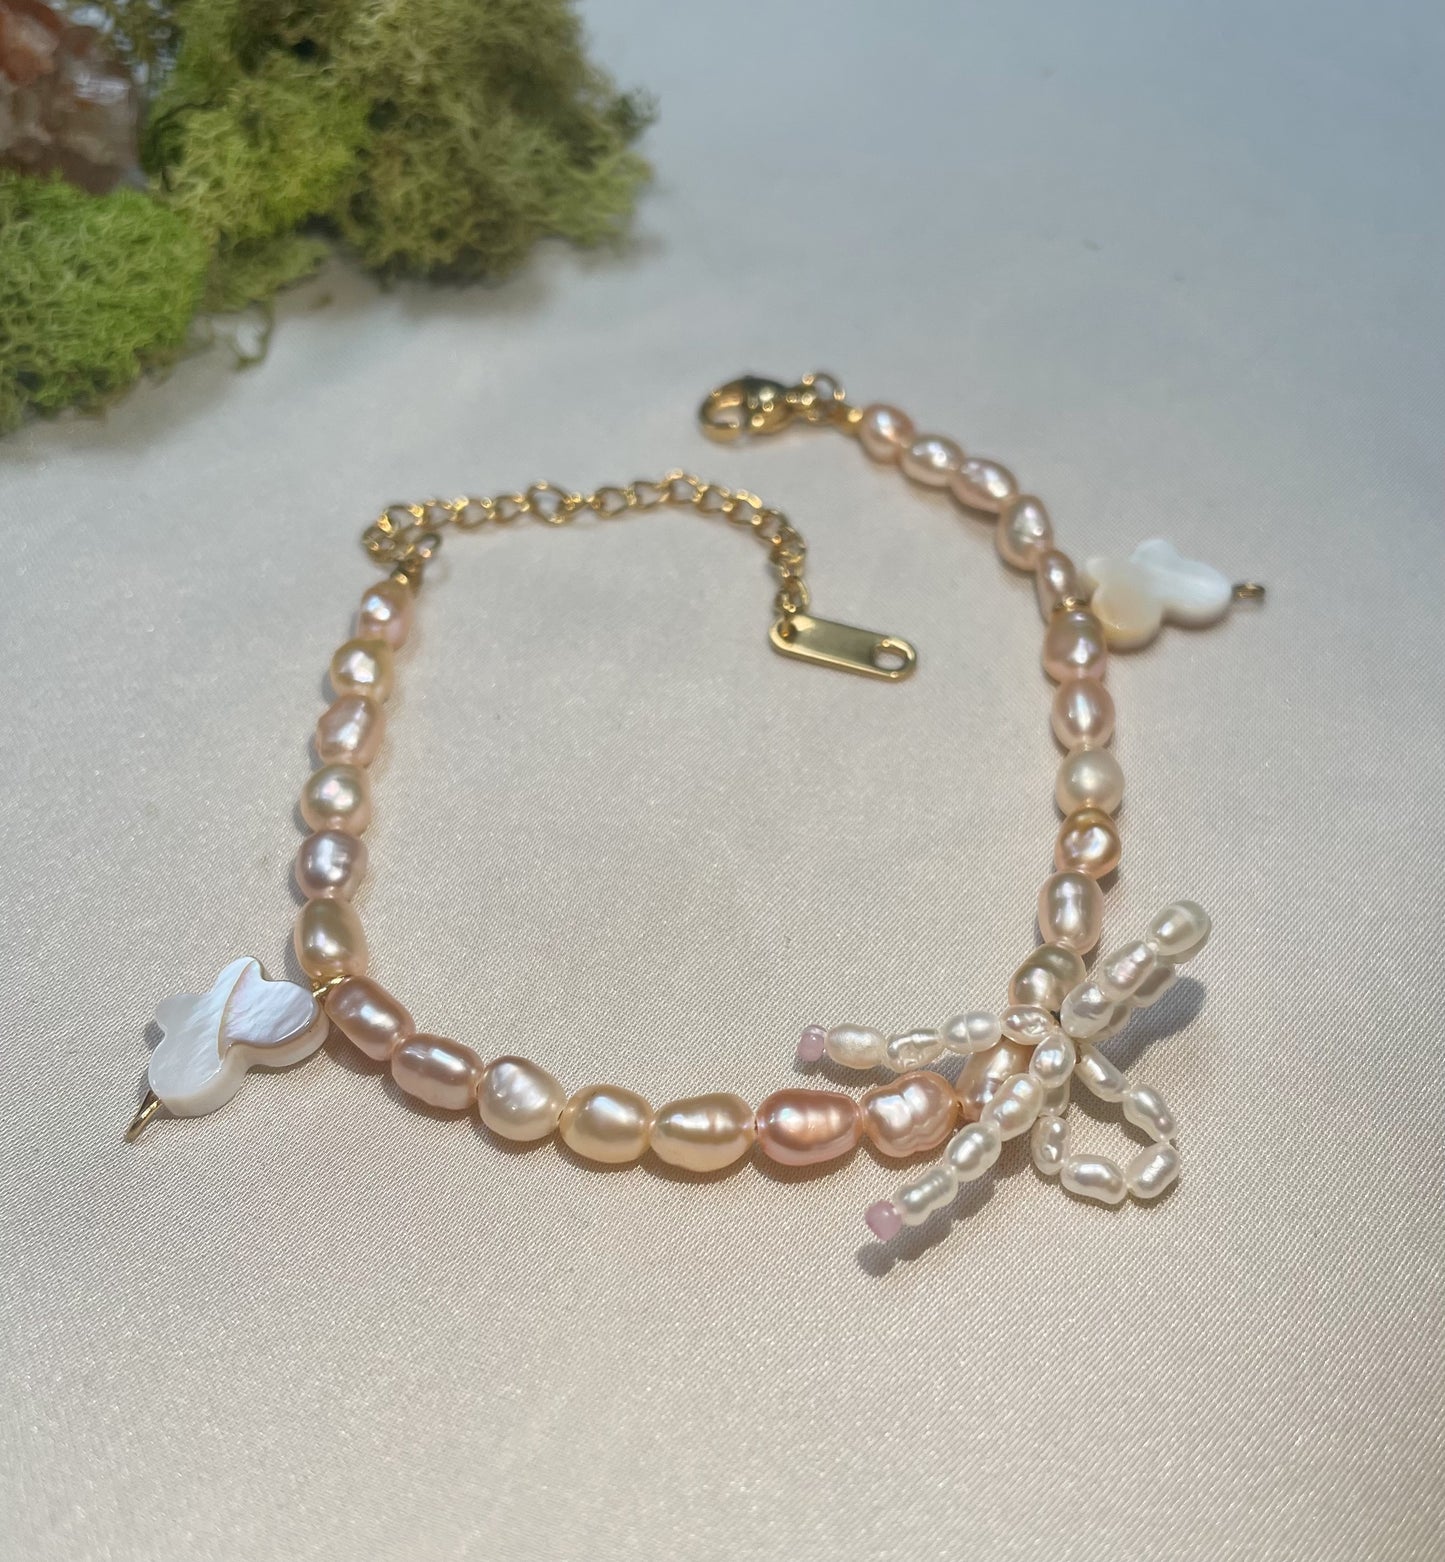 Pearl on pearl bracelet